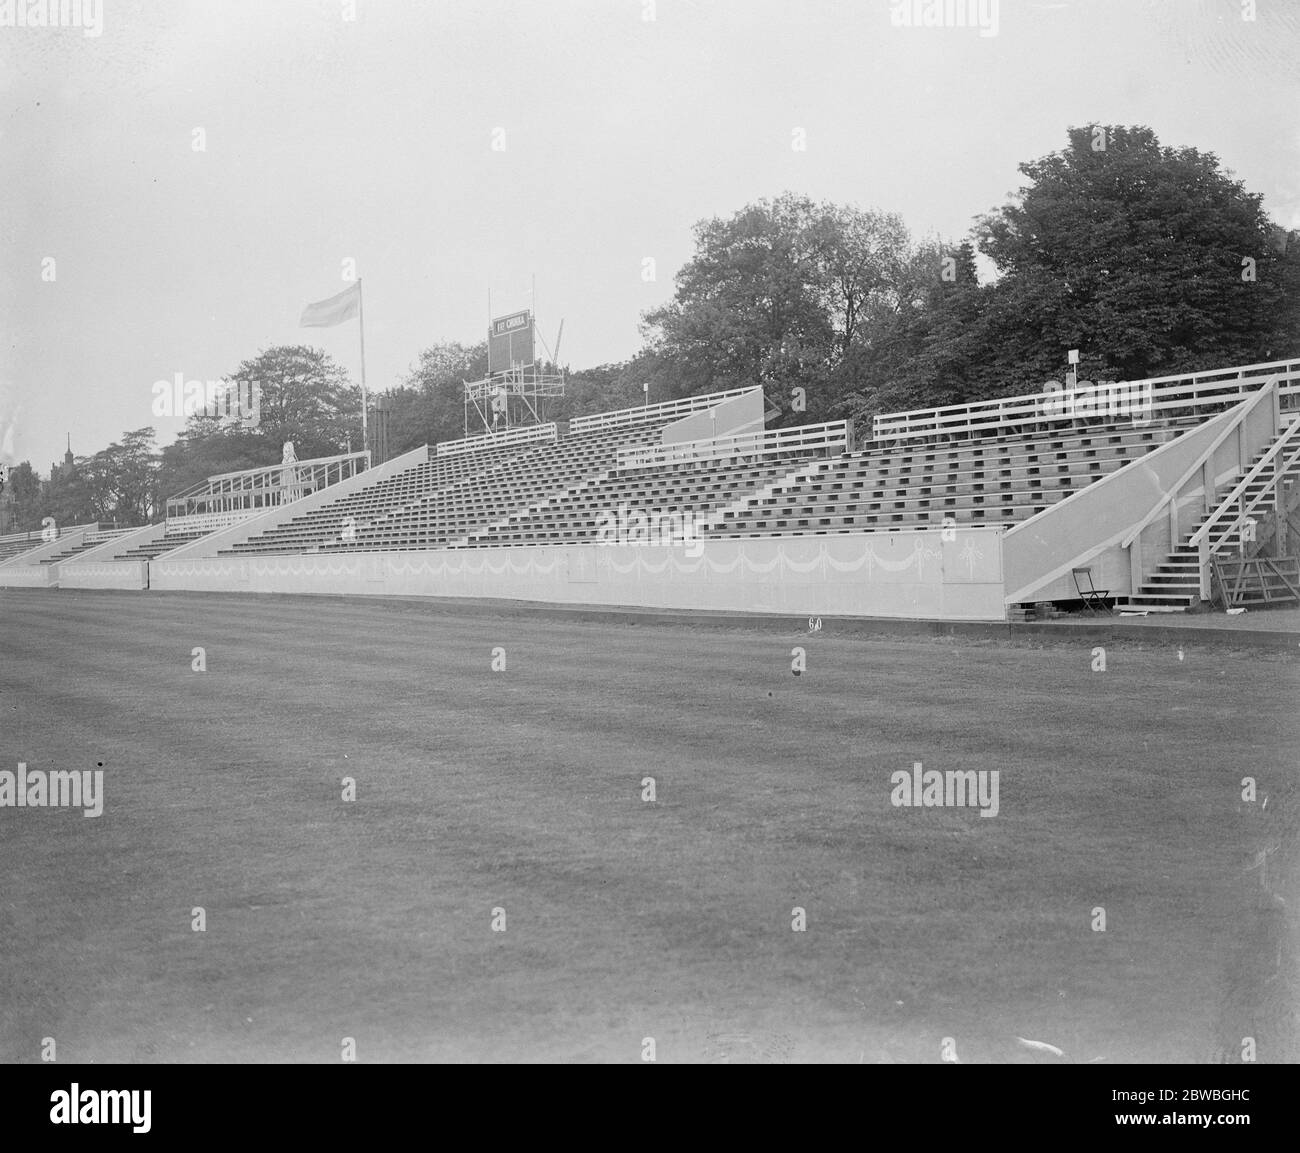 Alle bereit für Samstag Grat International Polo Match EINEN Blick auf die neu gebauten Stände in Hurlingham 17 Juni 1921 Stockfoto